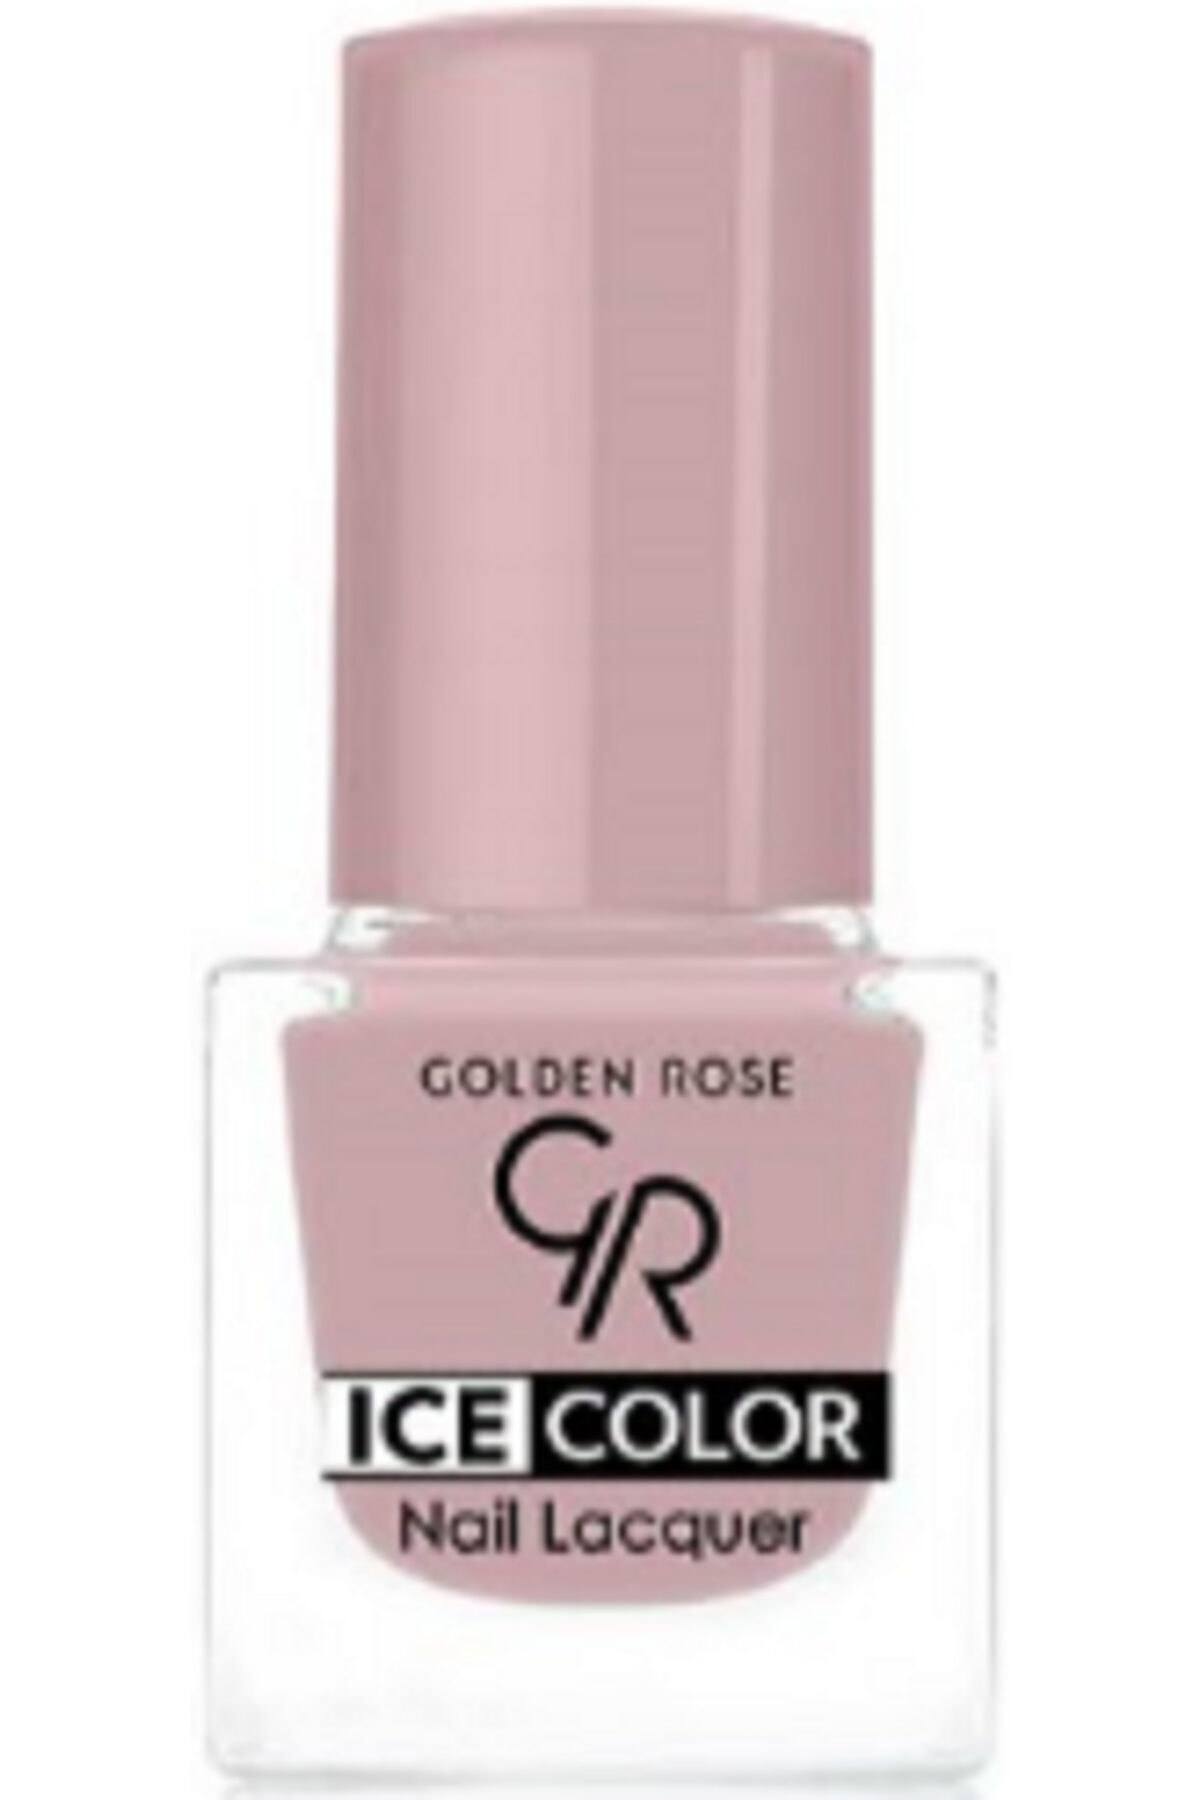 لاک ناخن یخی آیس چیک ICE شماره 177 رنگ صورتی گلدن رز Golden Rose